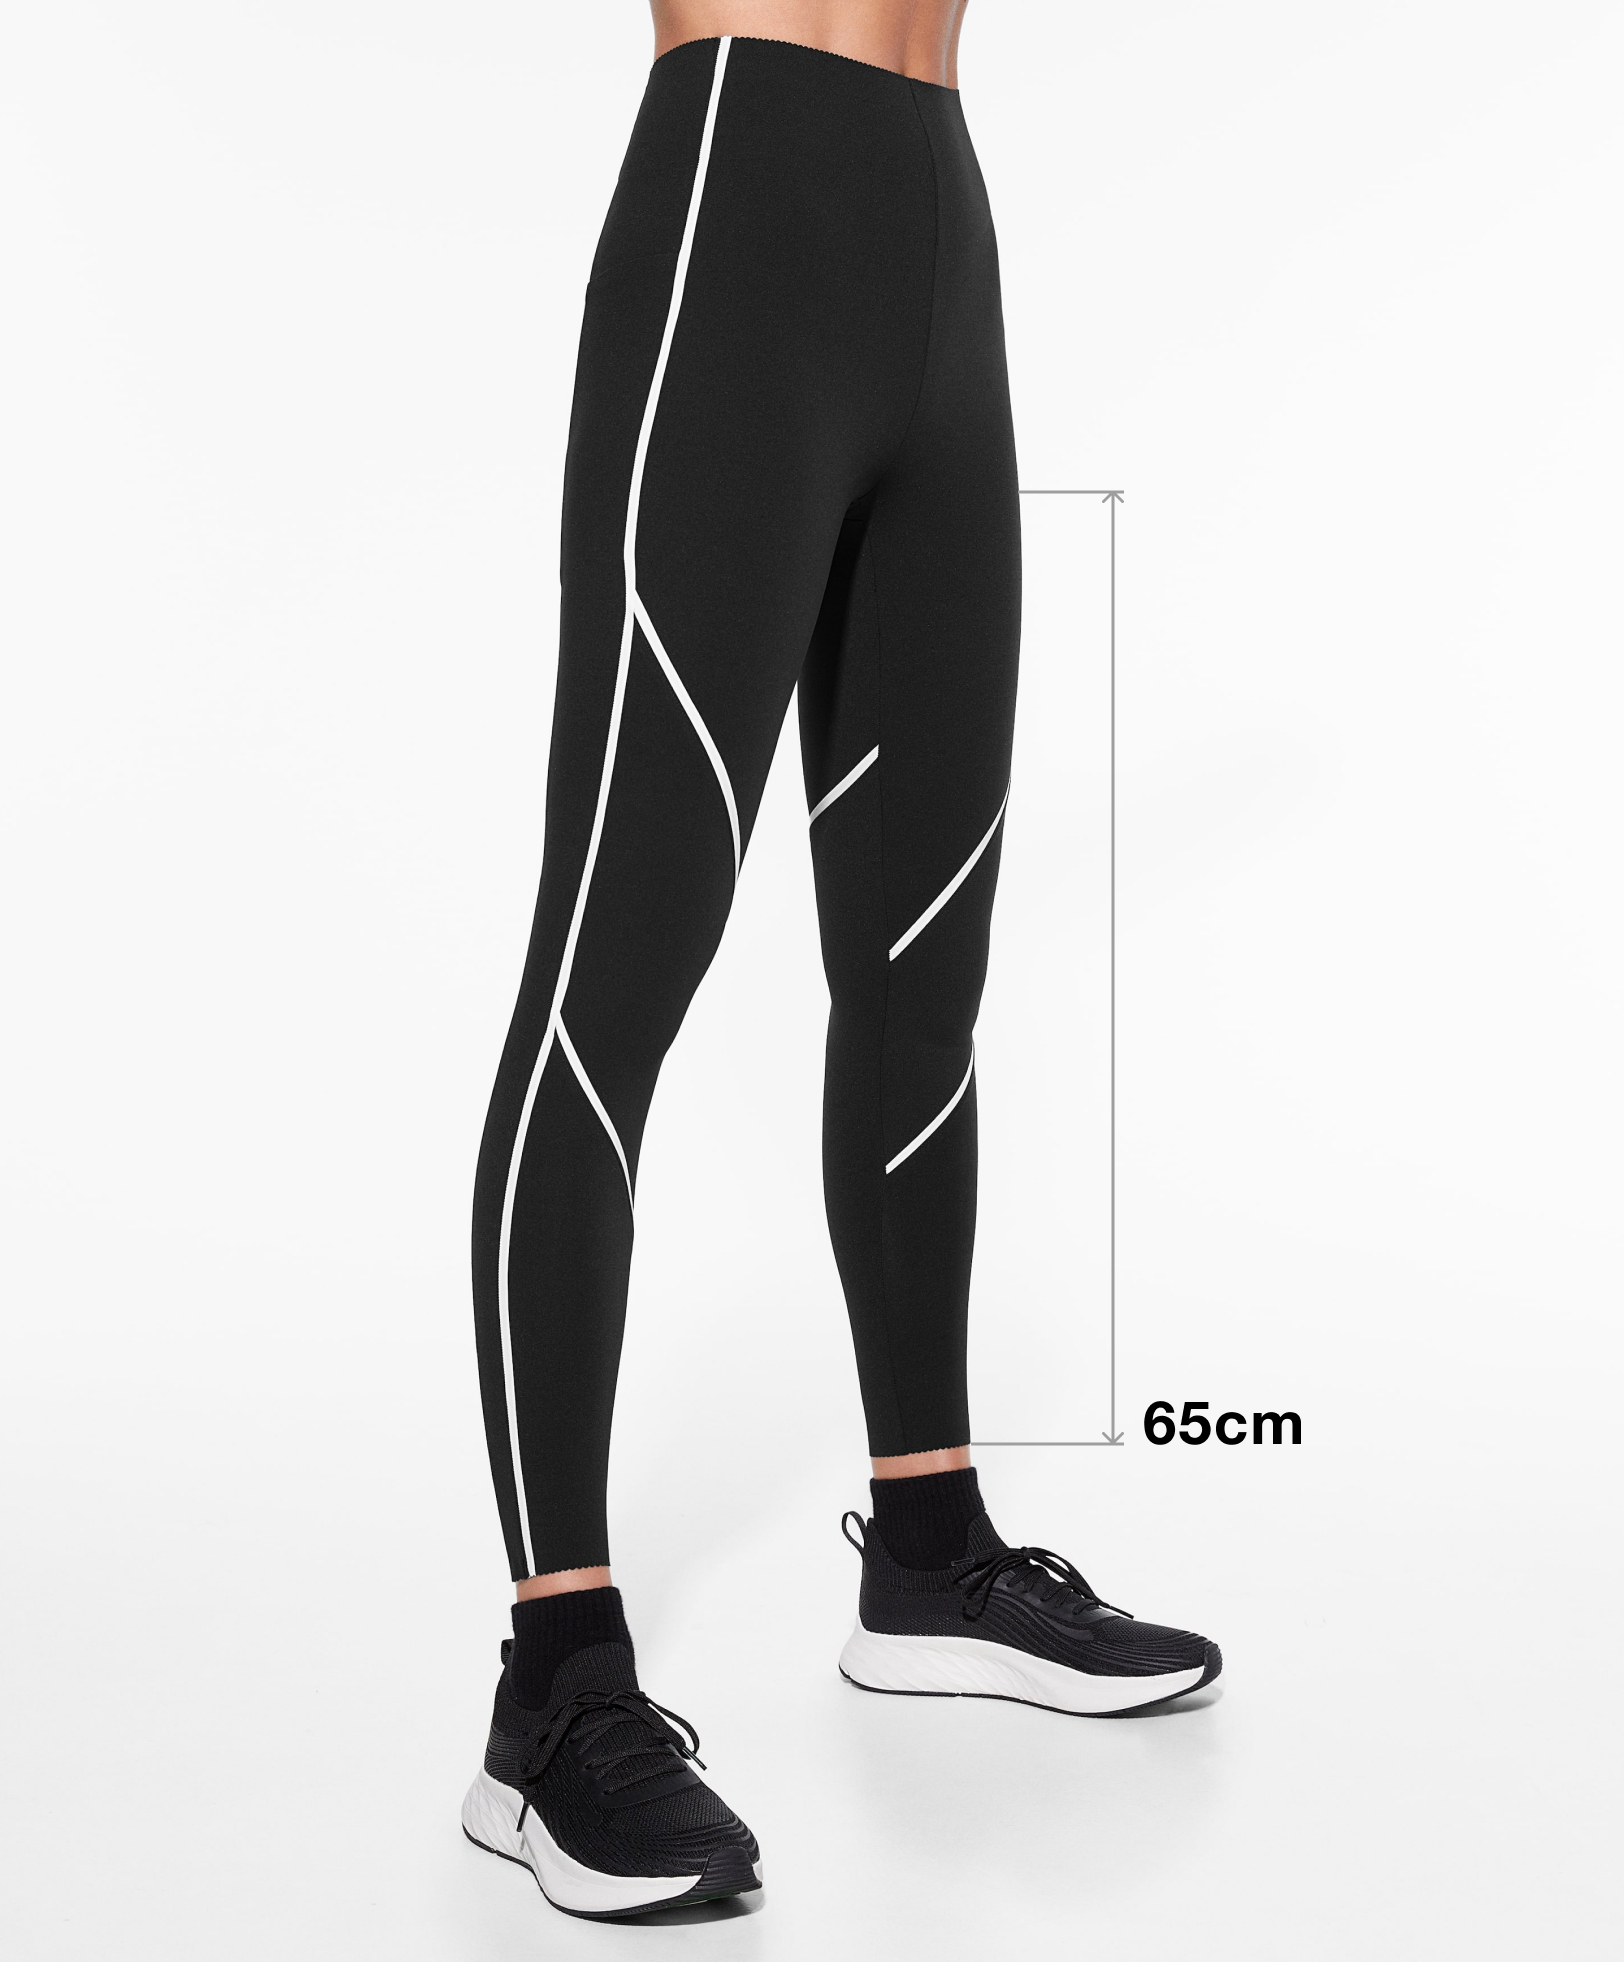 Neoprene-effect ankle-length 65cm leggings 